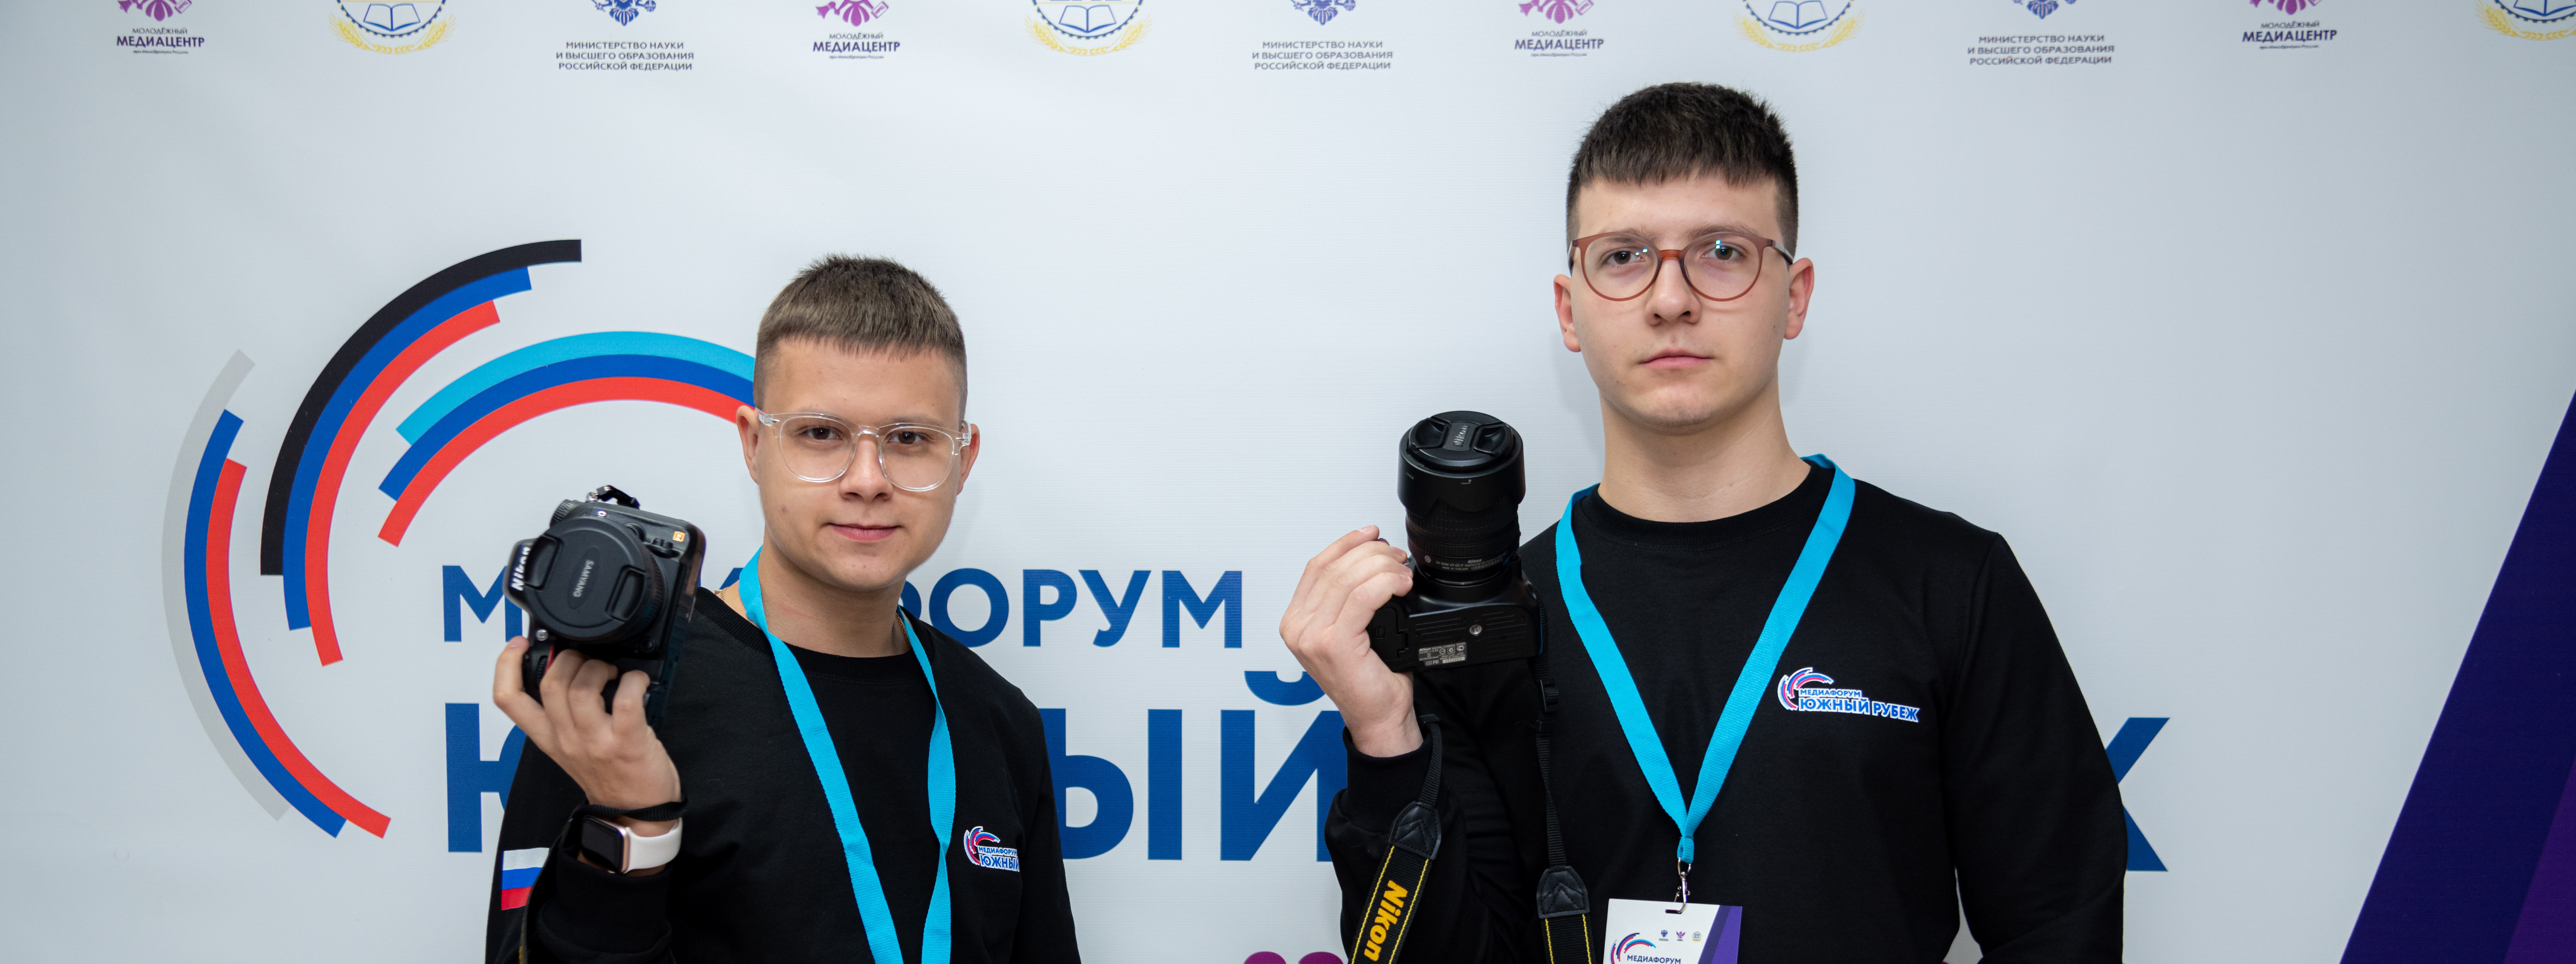 Объединяя смыслы: студенческий медиафорум «Южный рубеж» стартовал в Ростове-на-Дону